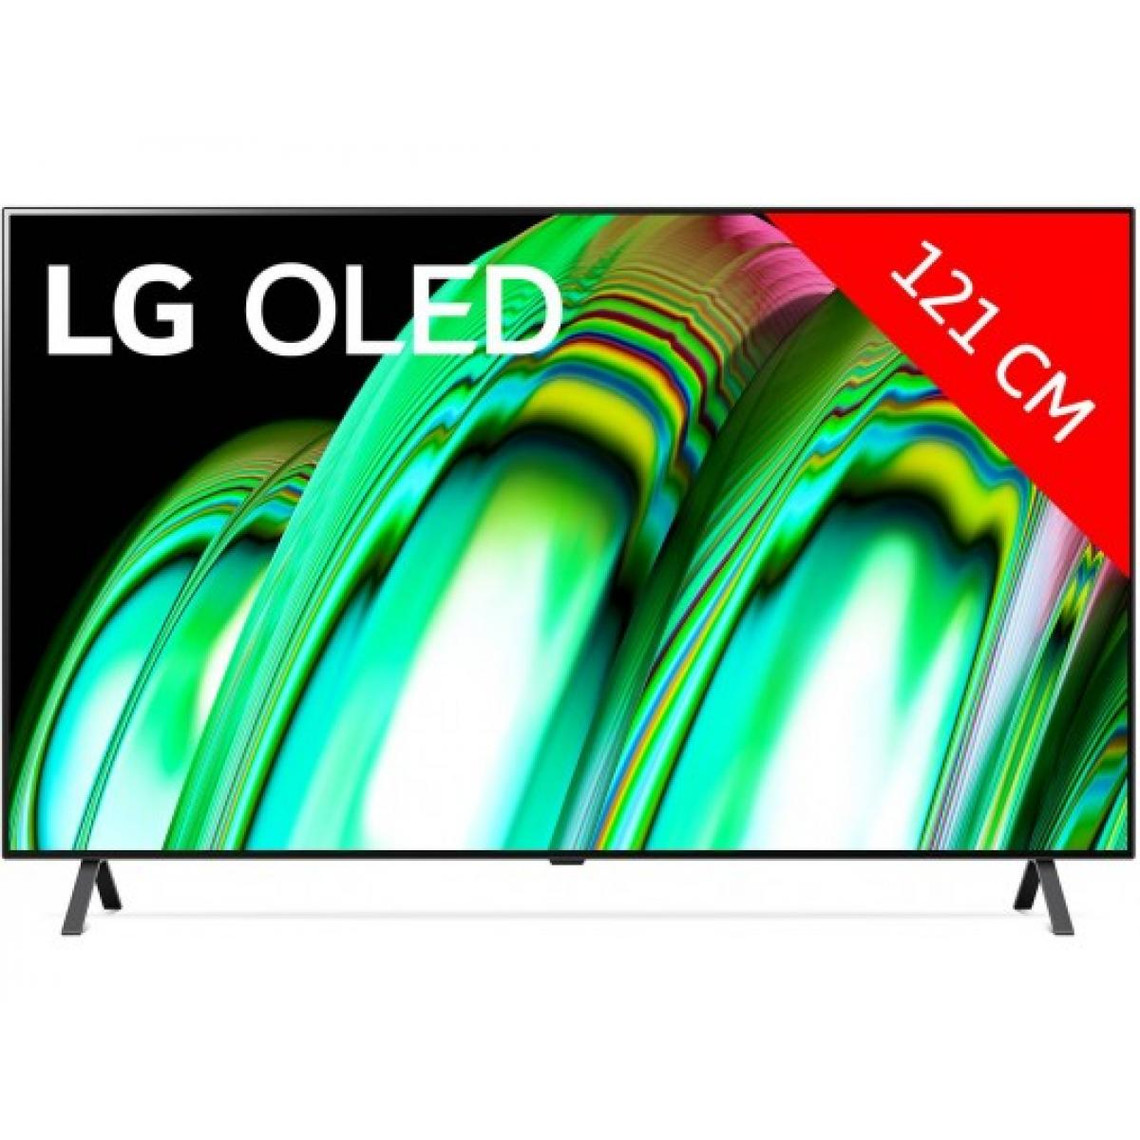 LG TV OLED 48 121 cm - OLED48A2 - 2022